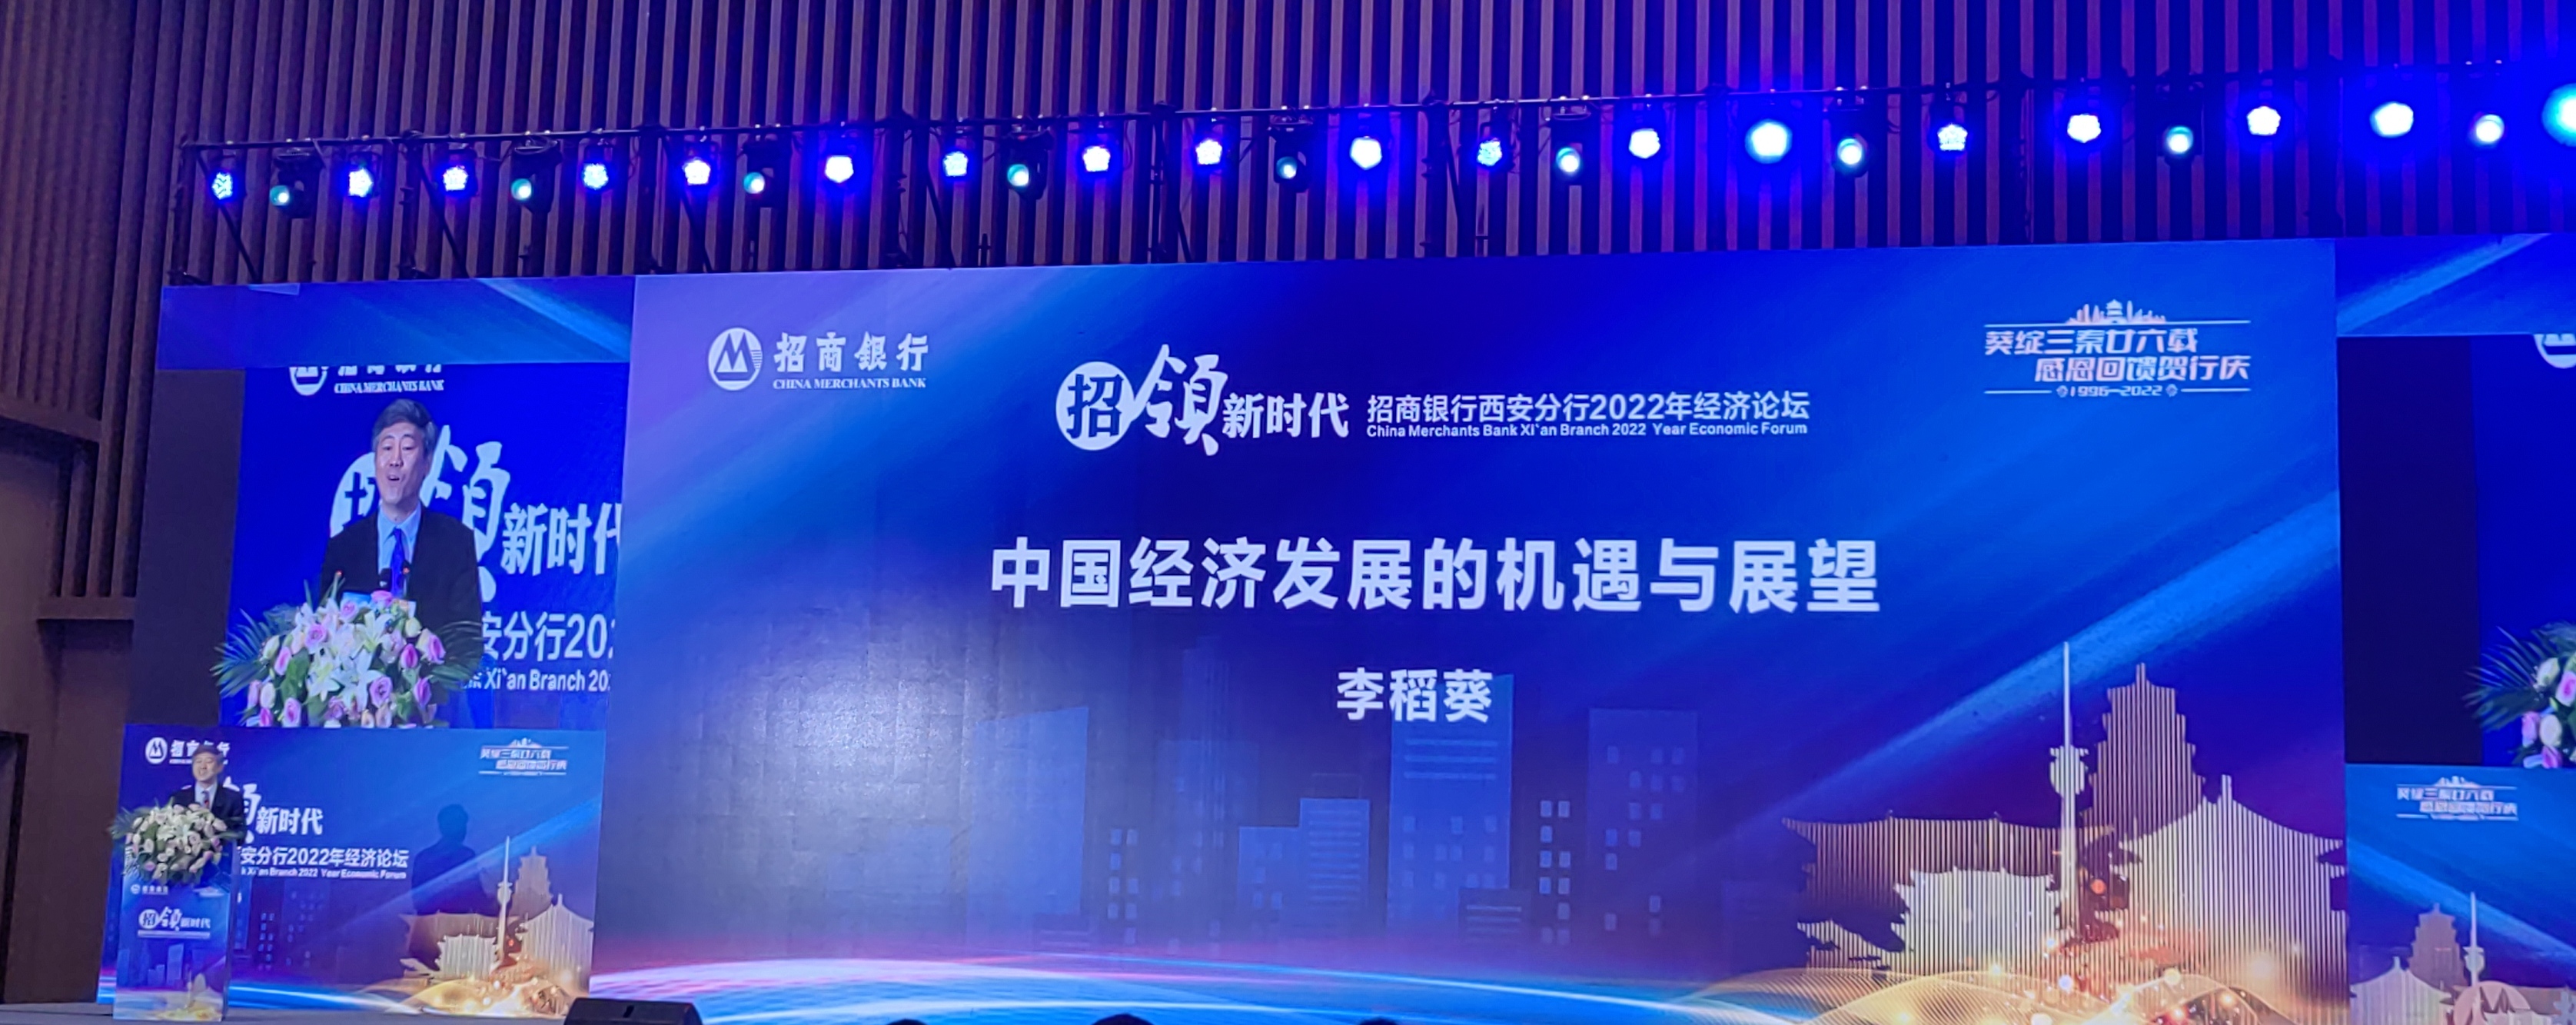 公司受邀参加《2022年中国宏观经济形势分析》主题会议